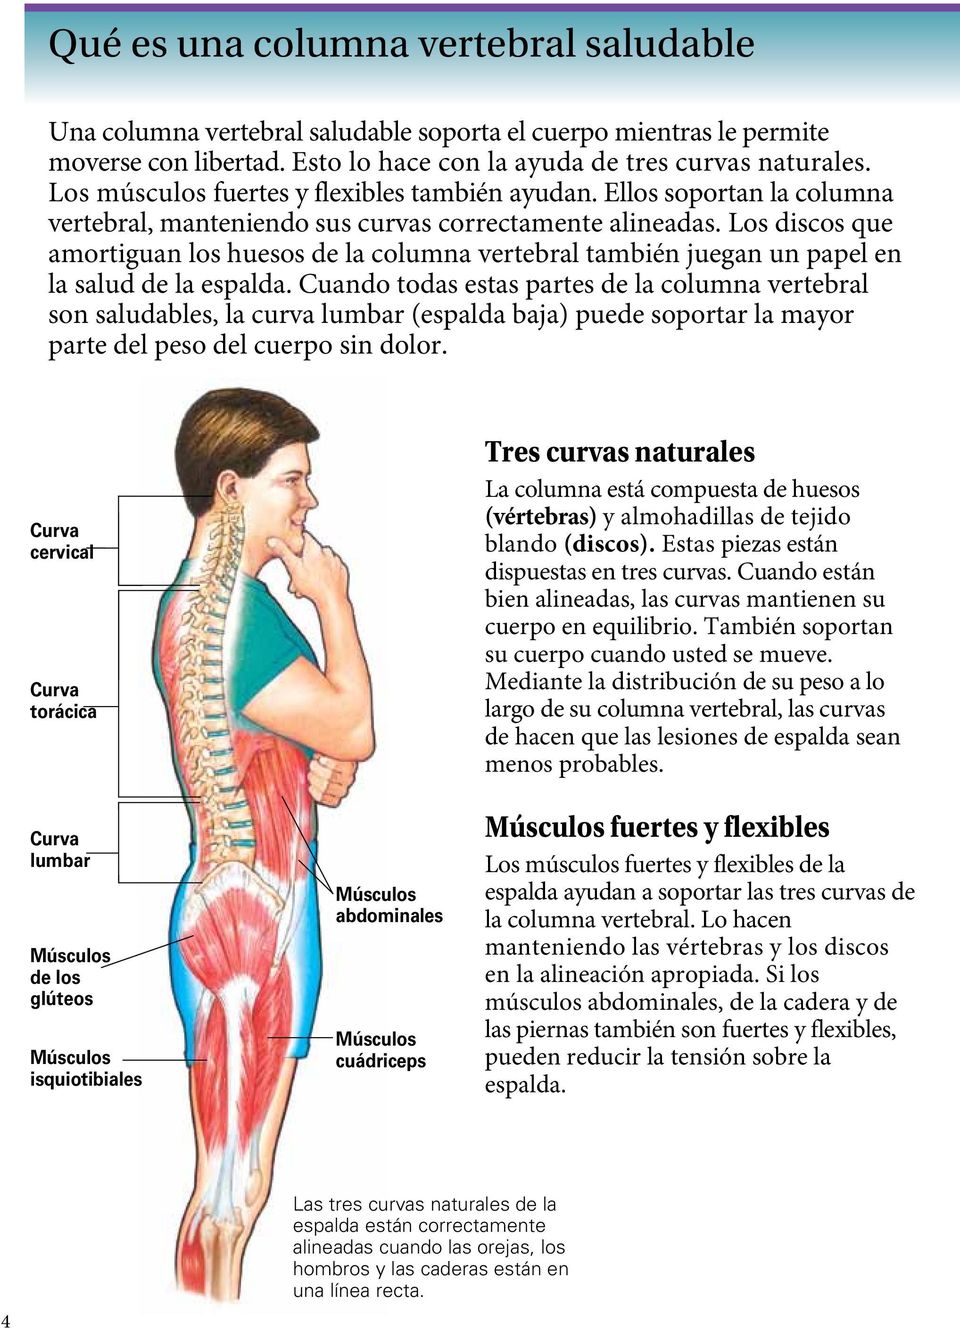 Los discos que amortiguan los huesos de la columna vertebral también juegan un papel en la salud de la espalda.